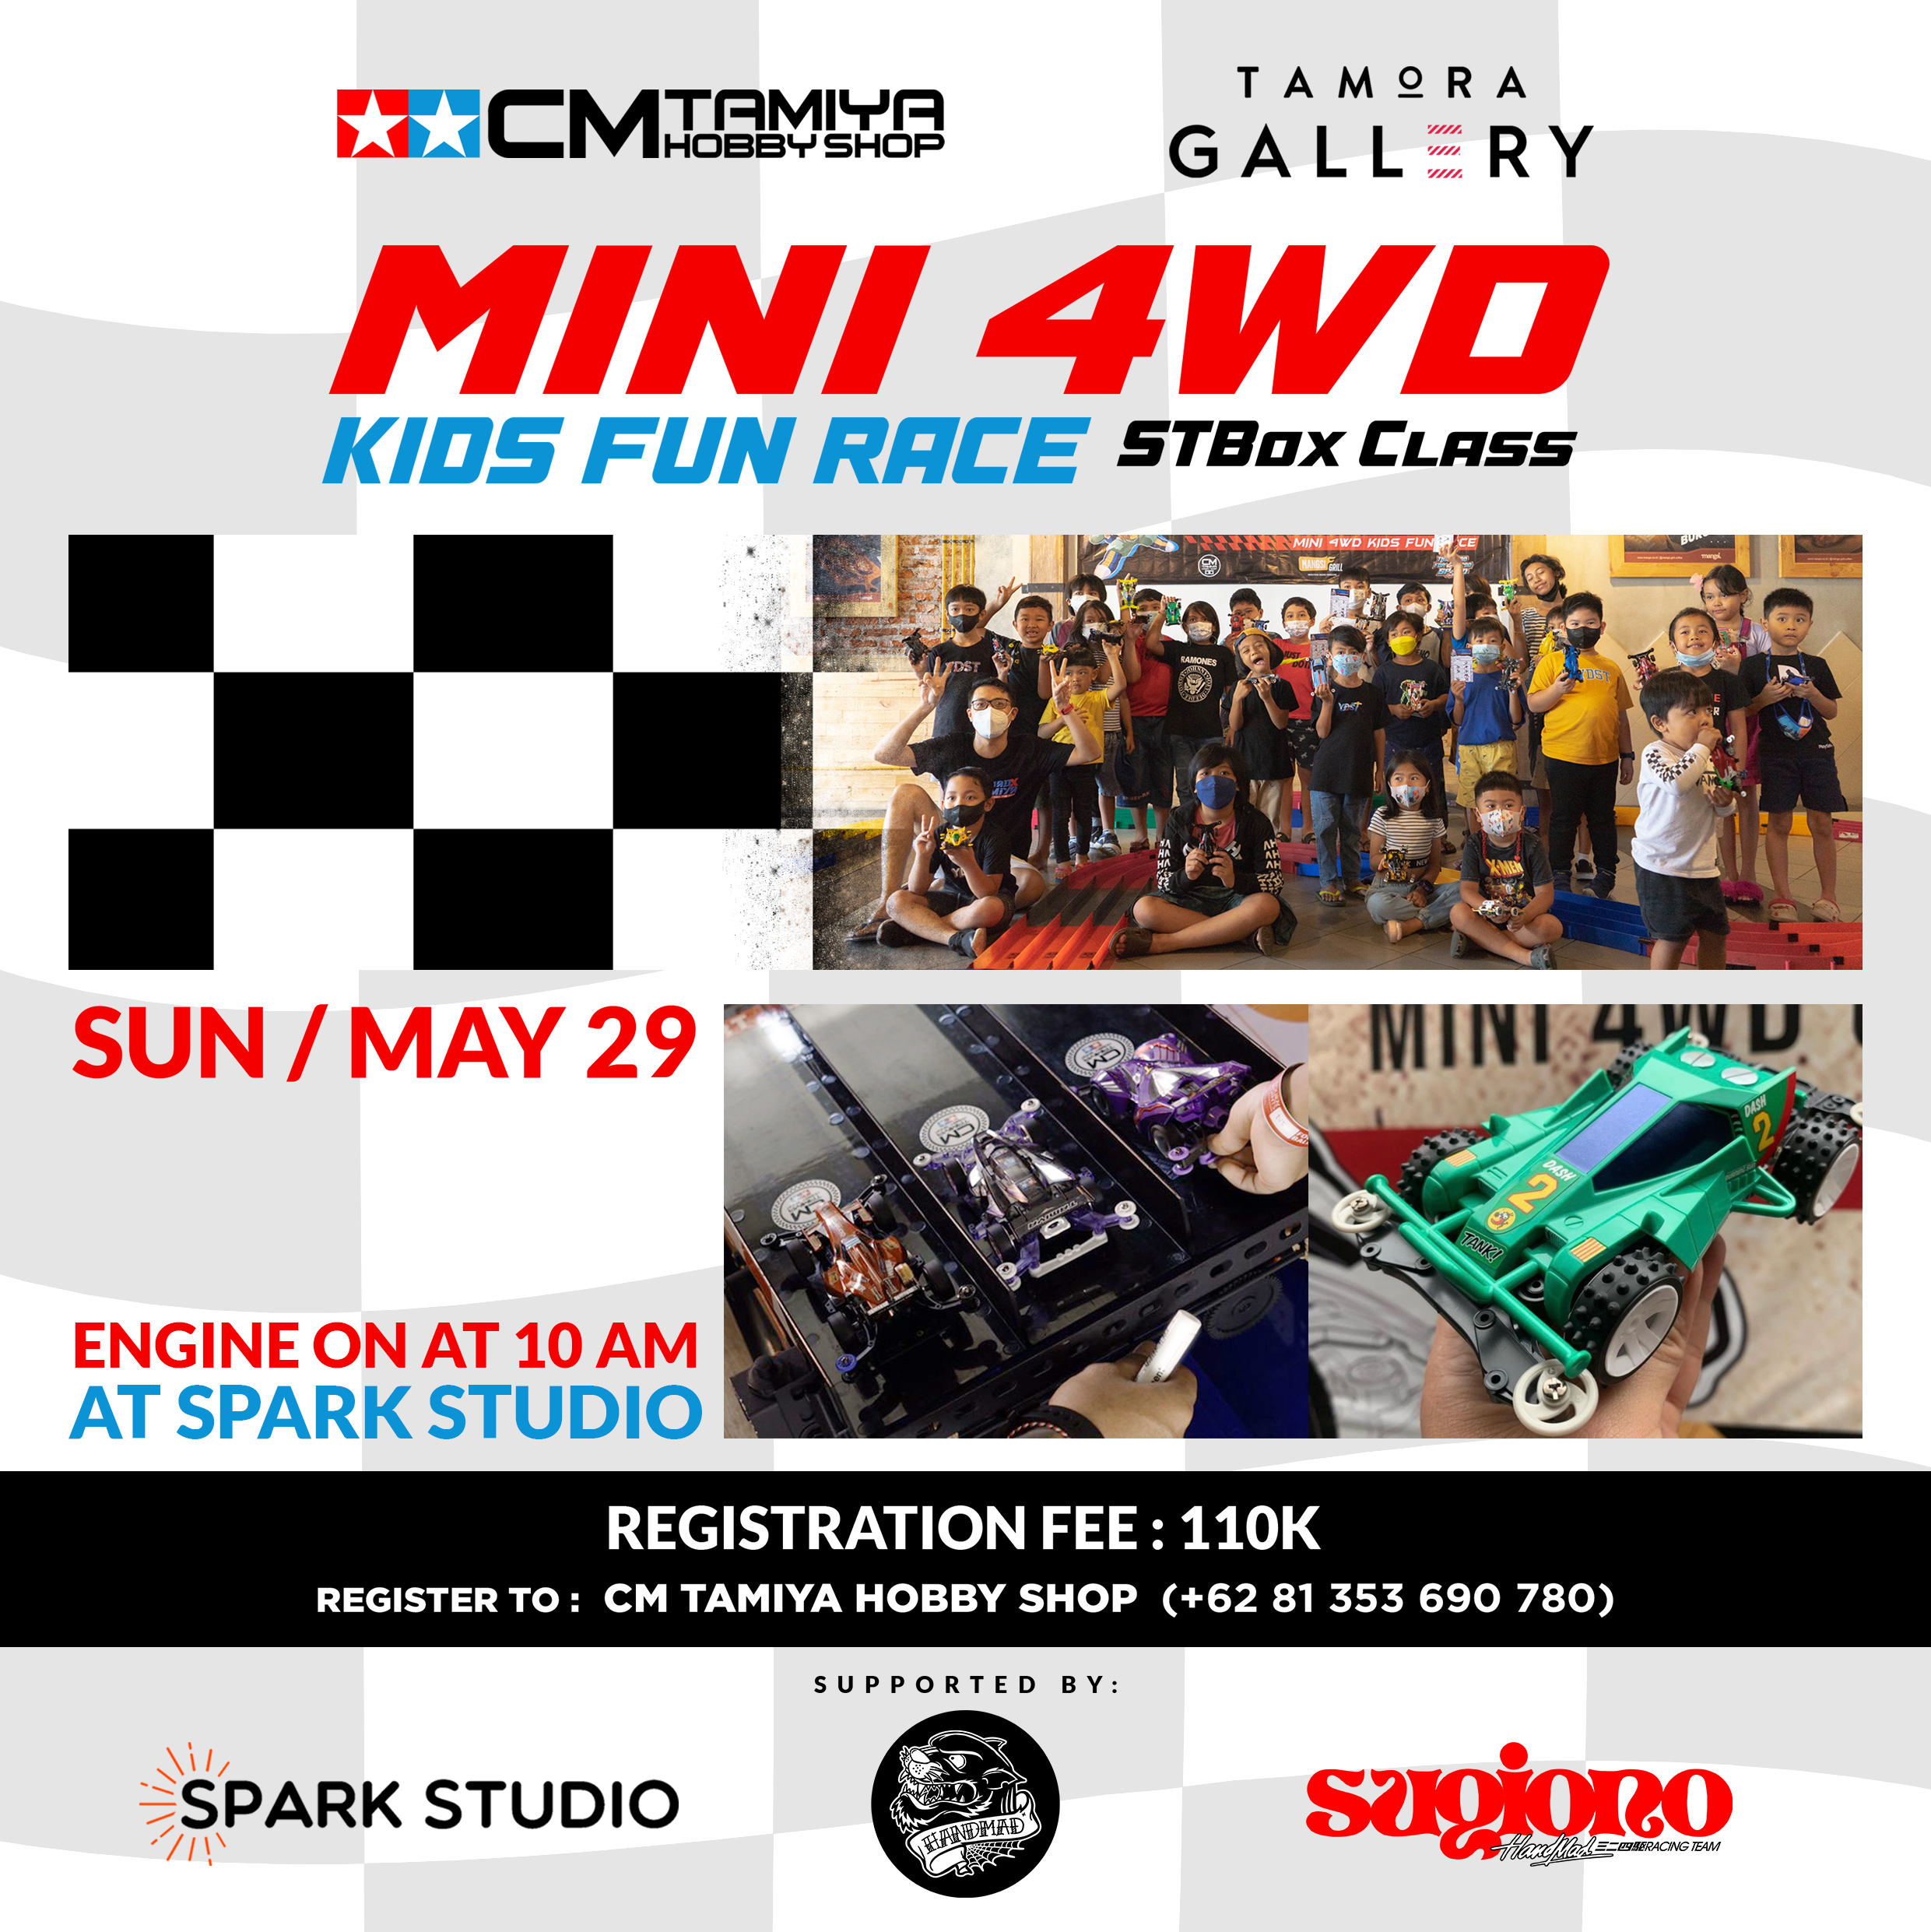 Tamora Gallery Mini 4WD Kids Fun Race